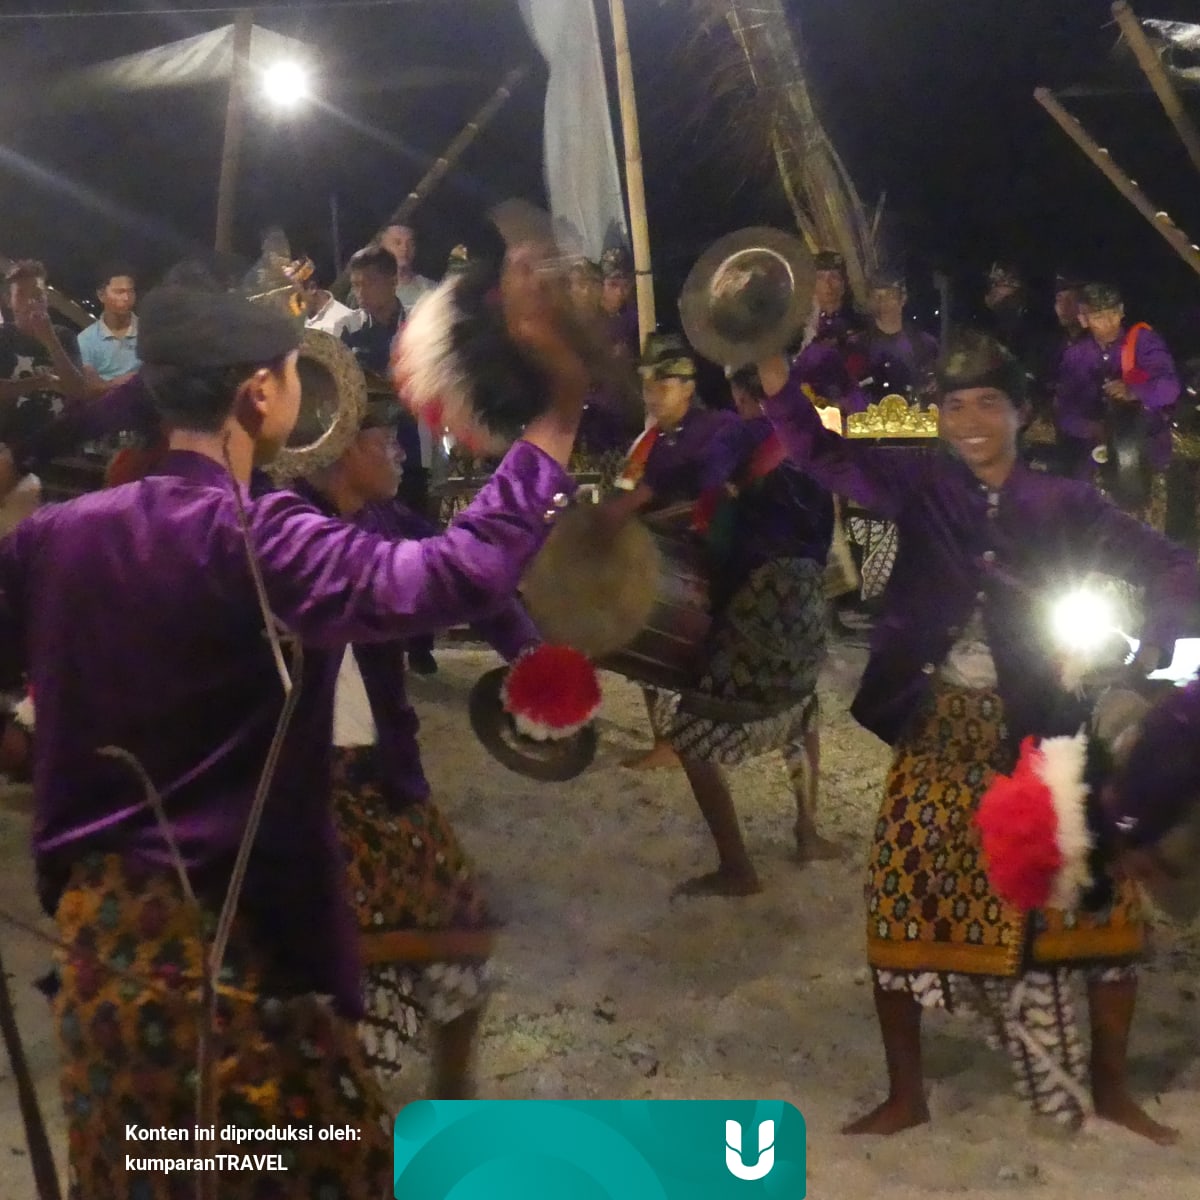 Alat Musik Tradisional Suku Sasak - Alat Musik Tradisional Ntb - Alat musik gendang yang digunakan sedikit berbeda dengan gendang pada umumnya karena memiliki ukuran yang lebih besar.